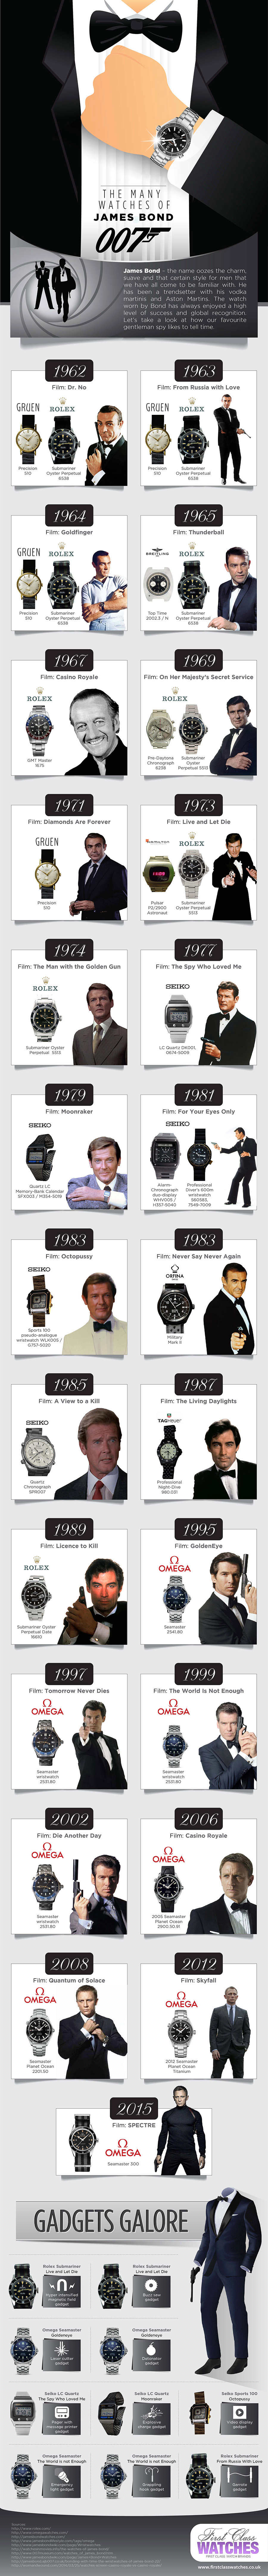 Toutes les montres de James Bond... - Page 7 51810310